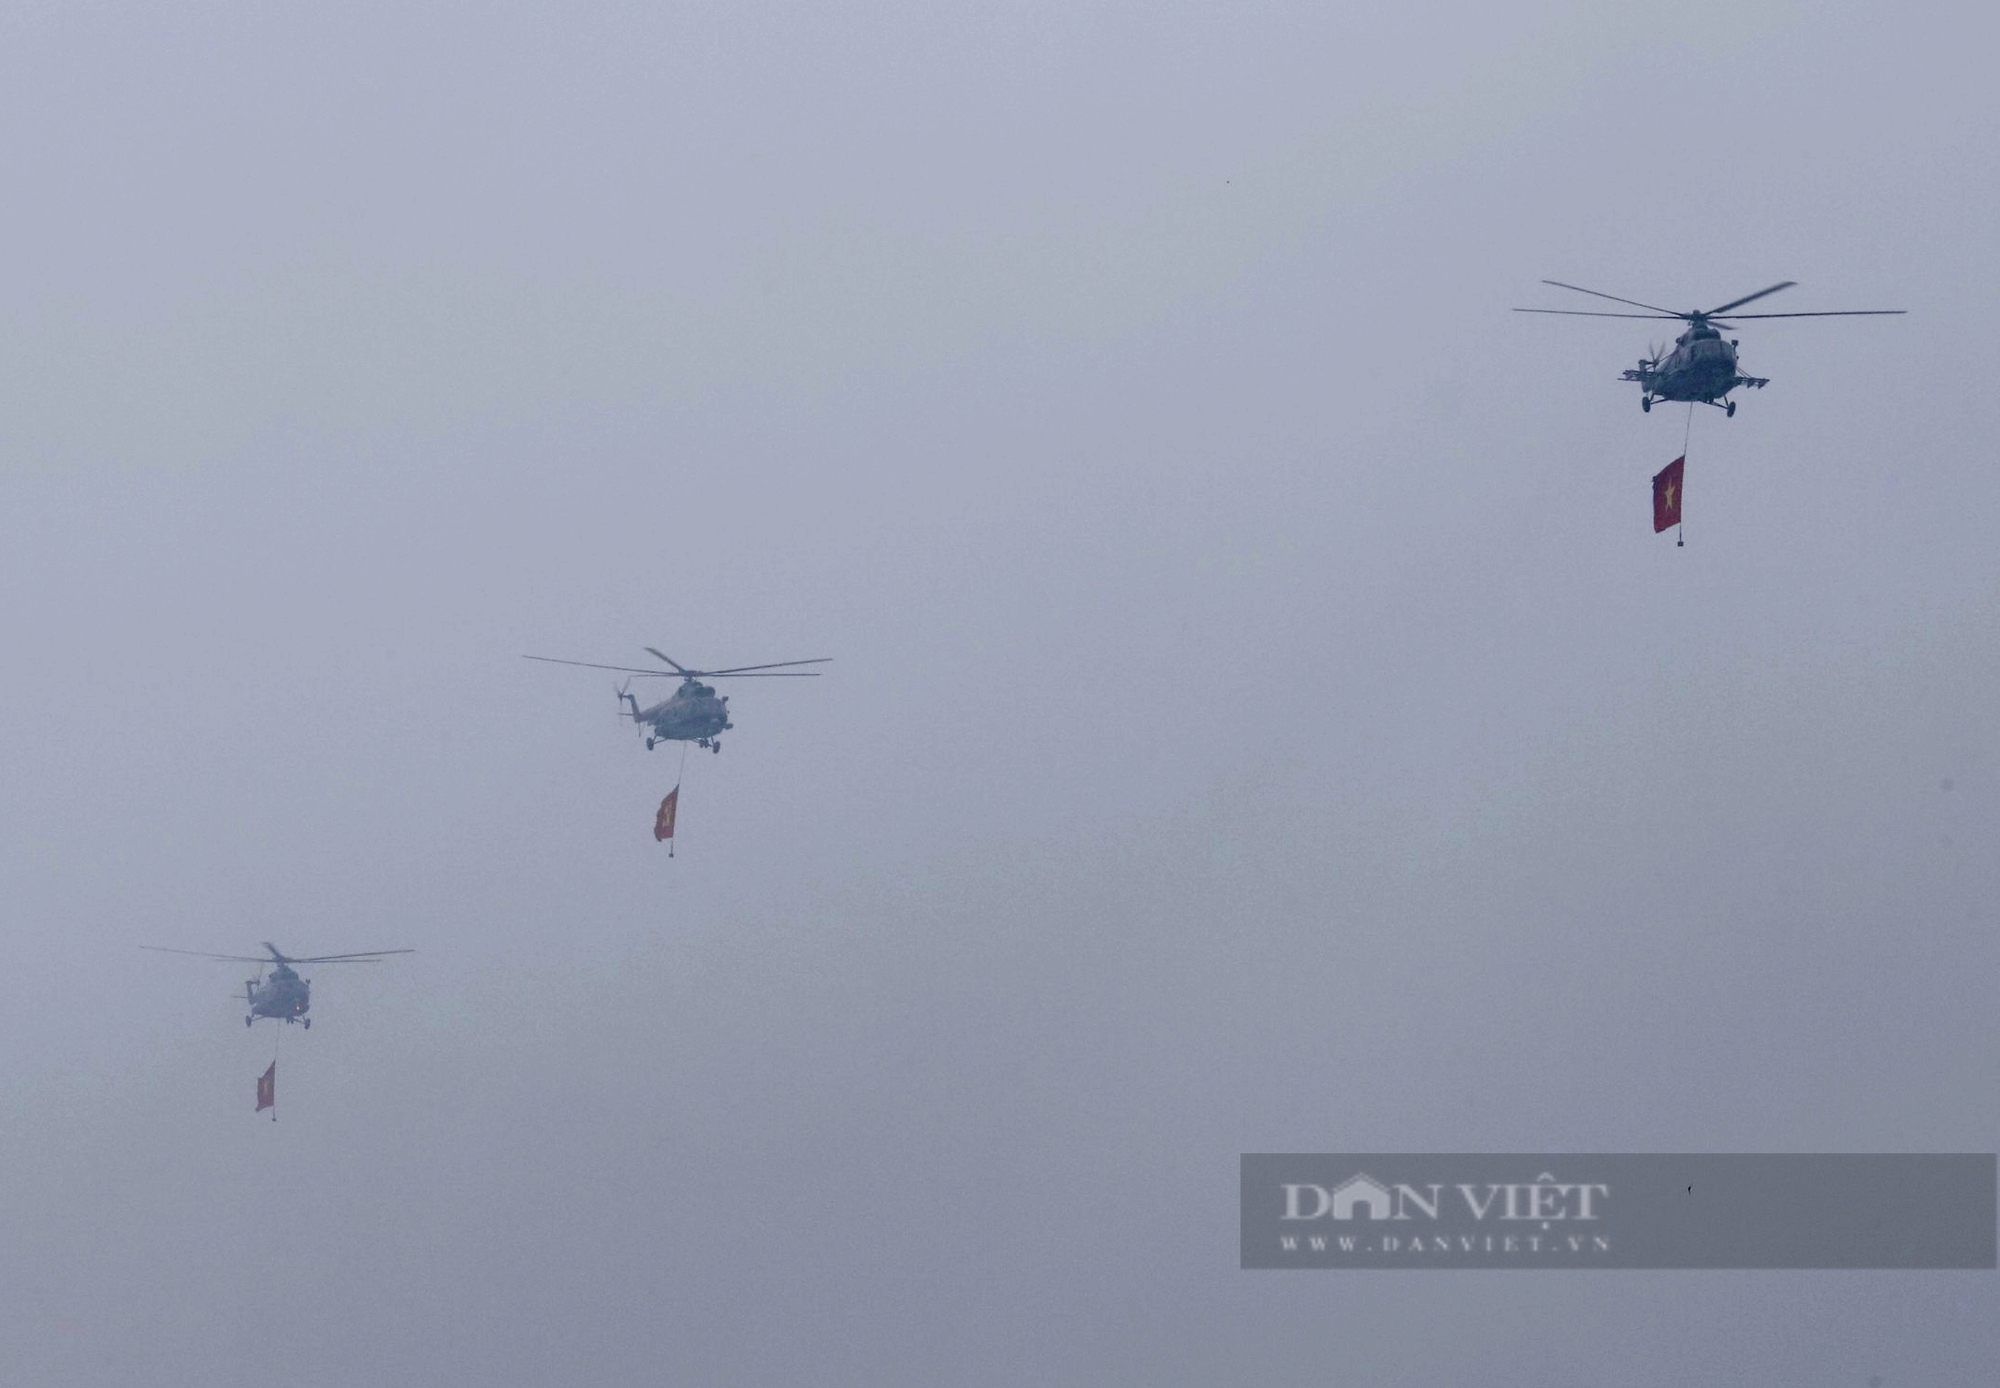 Hợp luyện diễu binh - diễu hành lần cuối, 9 máy bay trực thăng bay trên bầu trời Hà Nội- Ảnh 2.